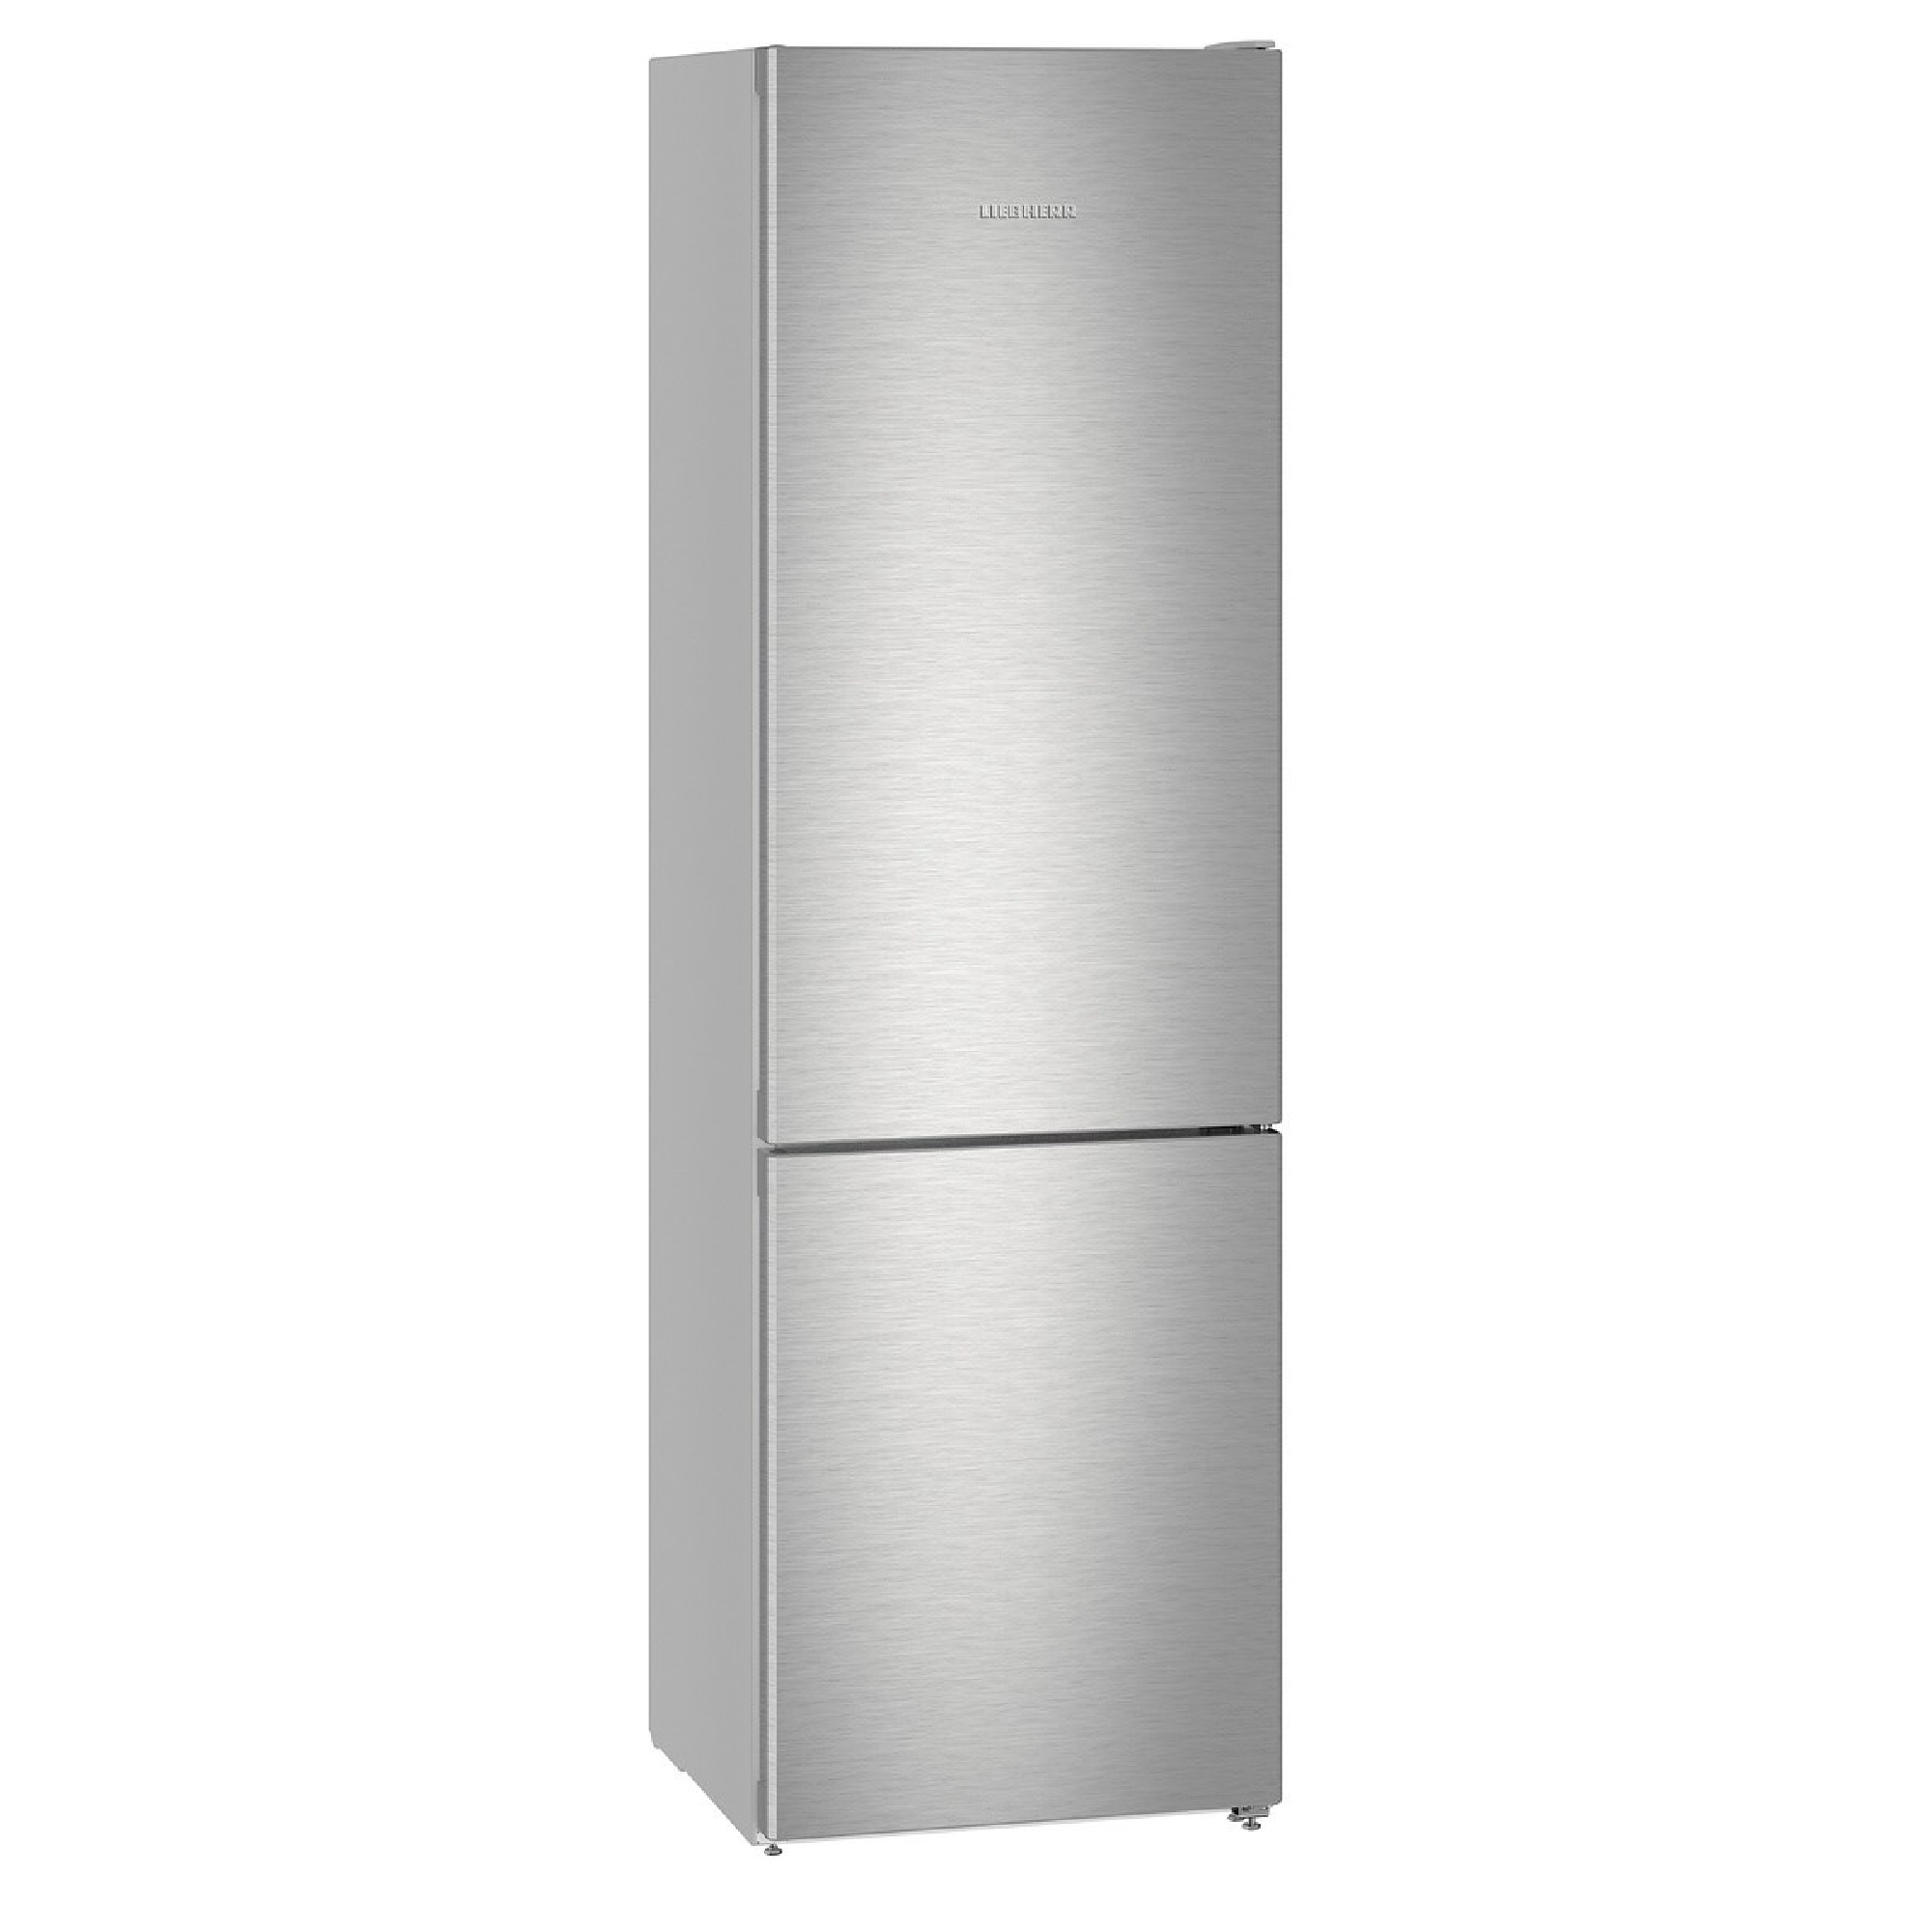 Купить холодильник в воронеже недорого. Холодильник Liebherr cnef5745. Холодильник Liebherr CUSL 2915. Холодильник ATLANT хм 4423-080 n. Холодильник Liebherr CNPES 4358.